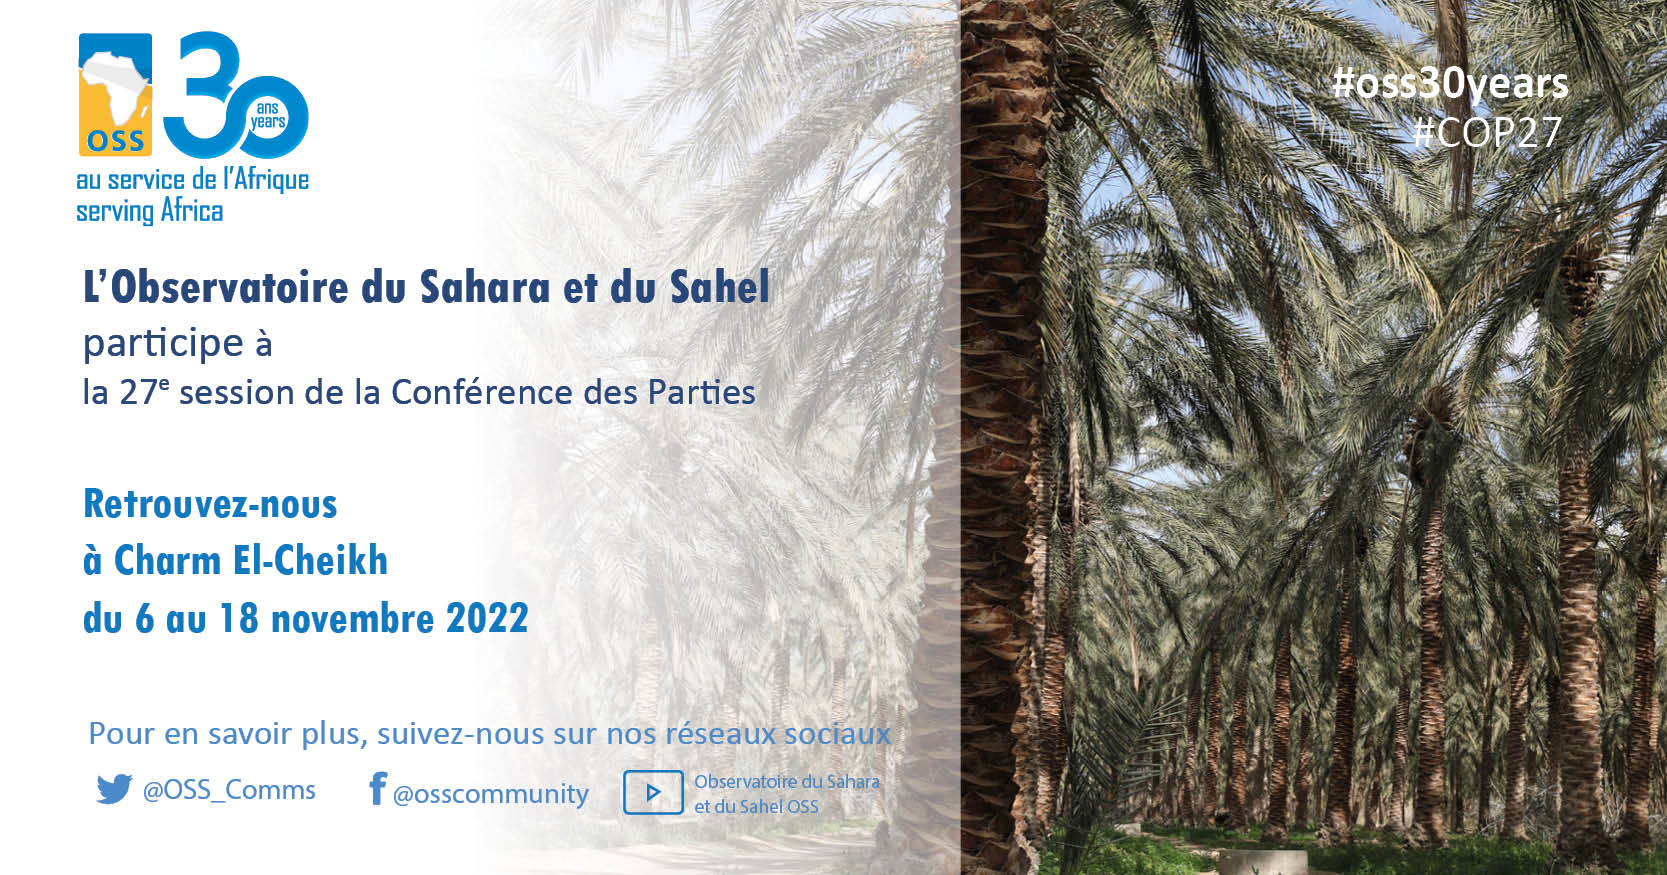  La 27e Conférence des Parties (COP27) de l'UNFCCC arrive à grands pas